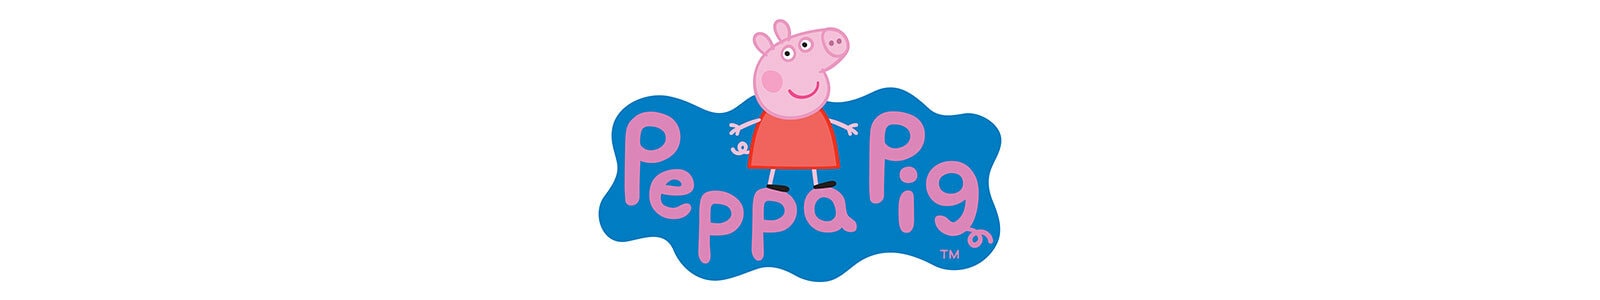 Peppa Pig Versiering